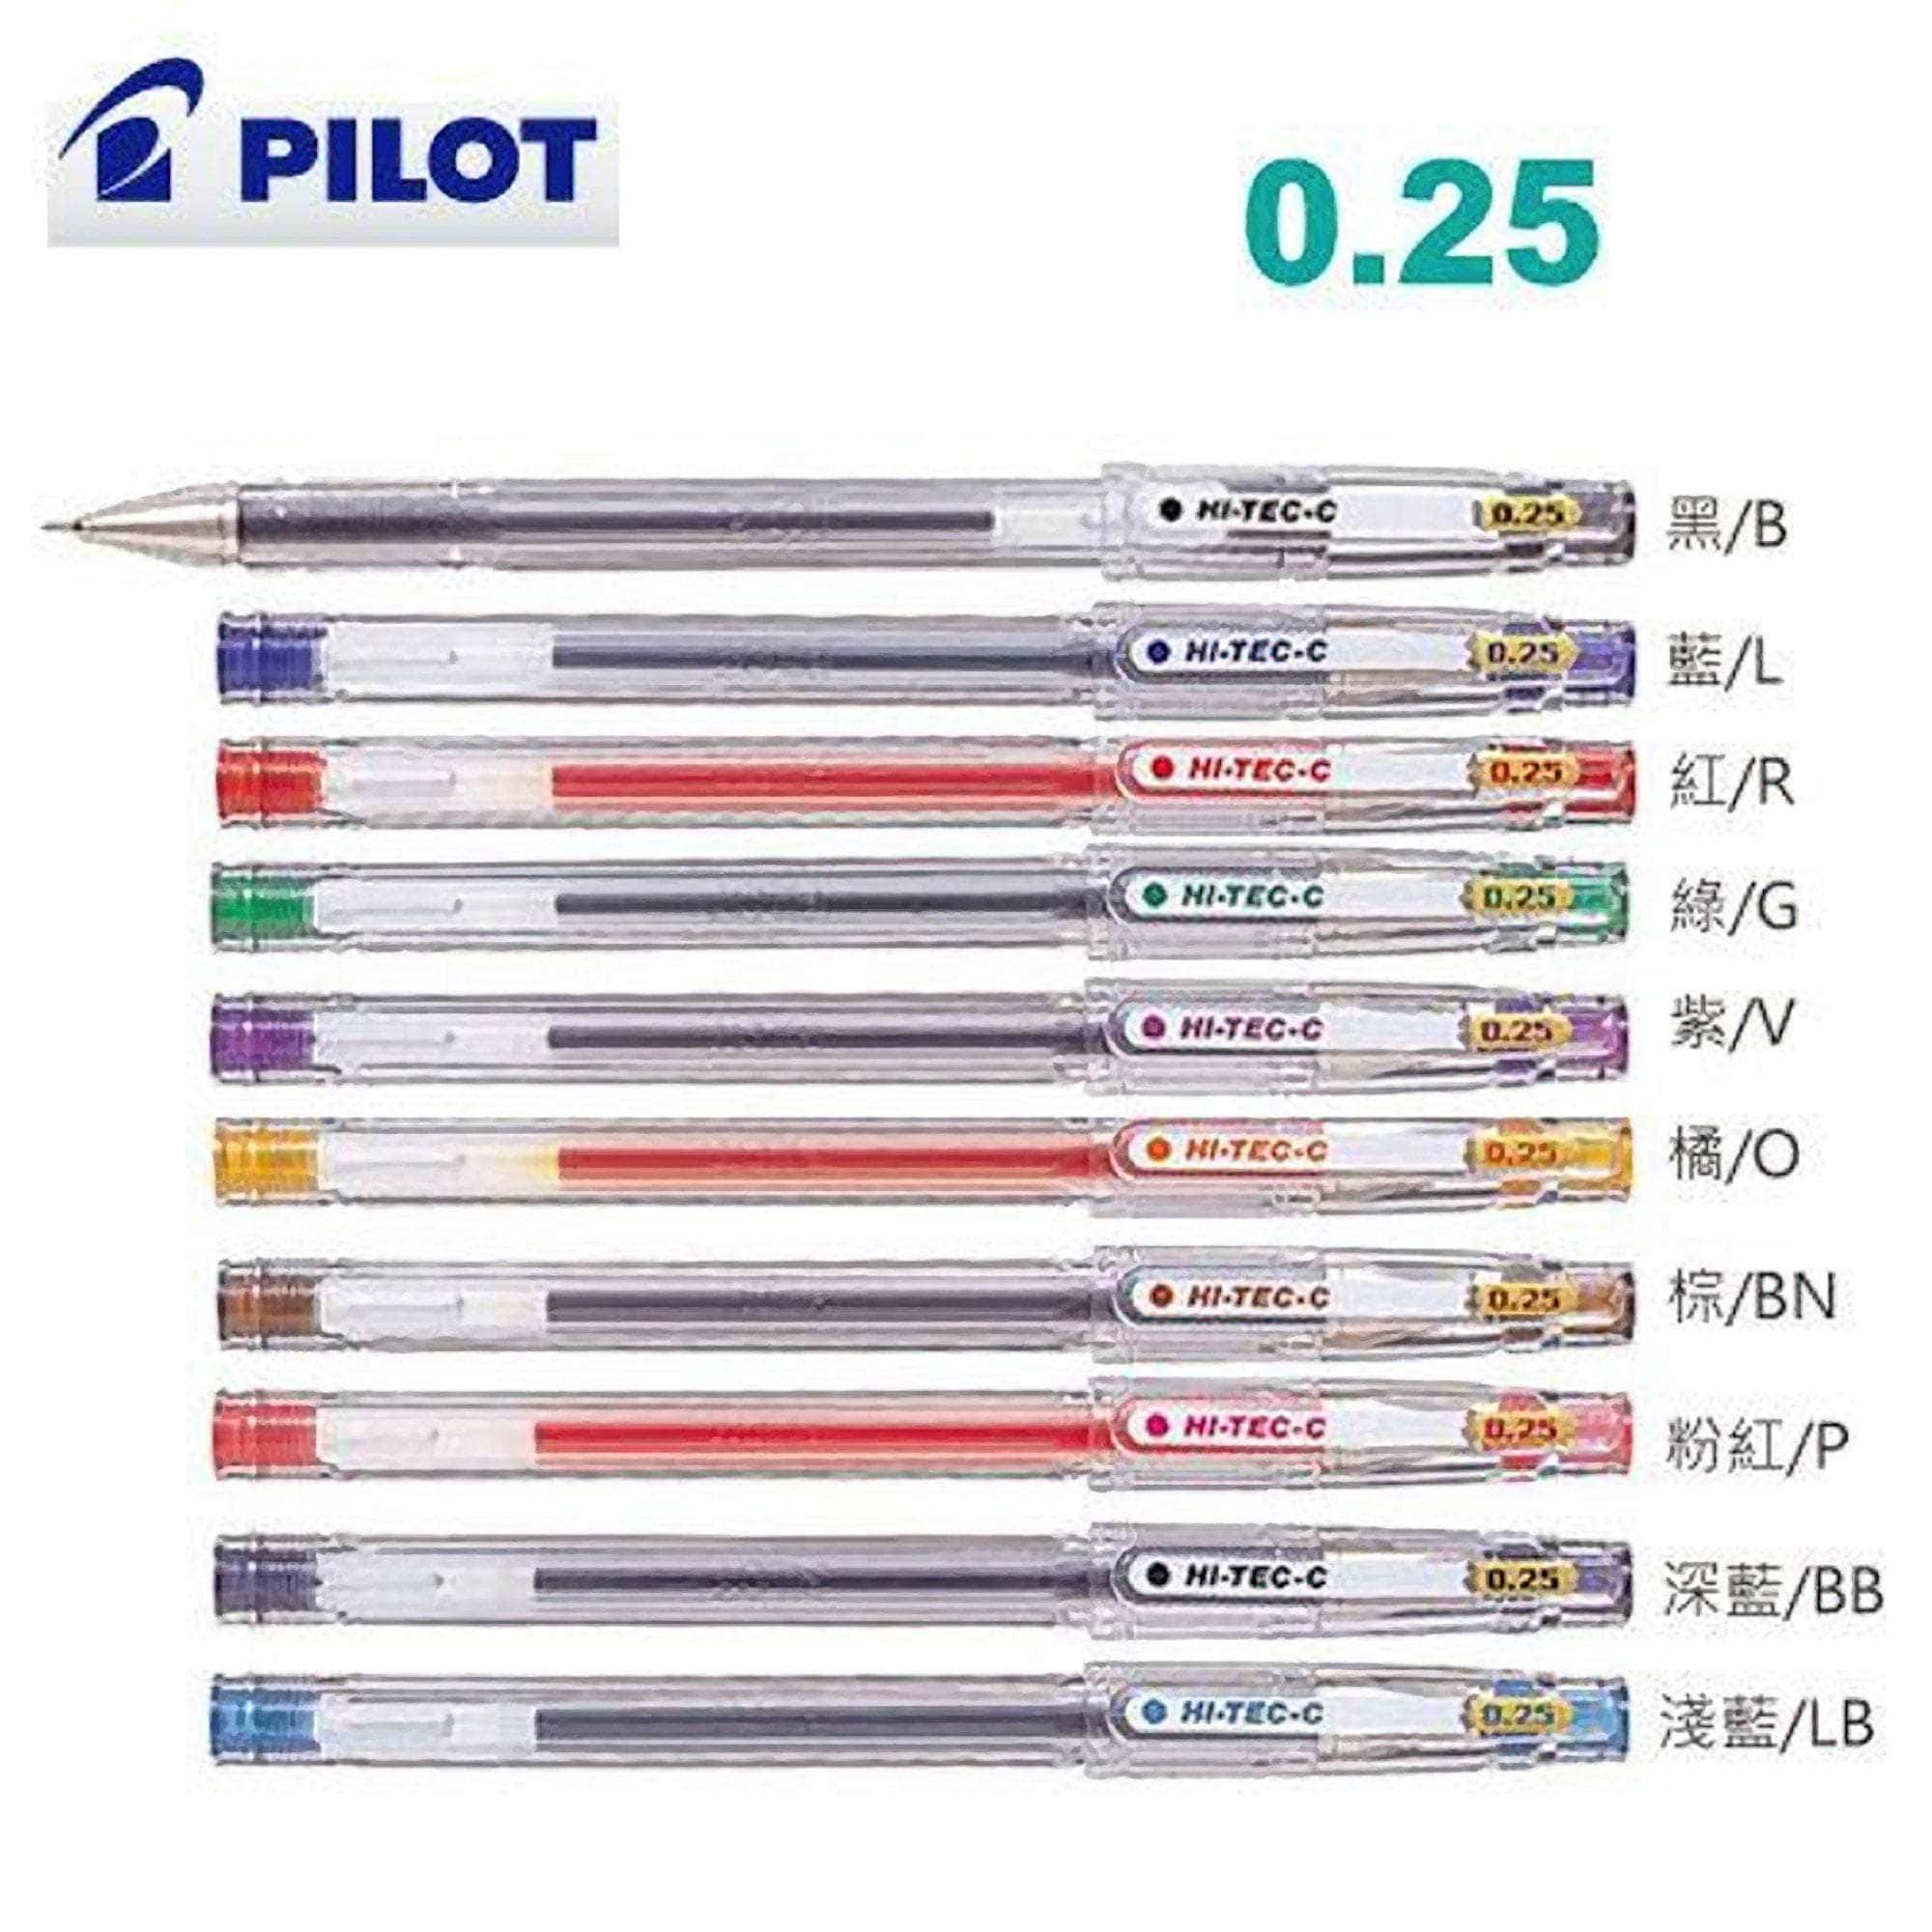 https://stationerymanor.com/cdn/shop/products/pilot-hi-tec-c-gel-pen-ultra-fine-point-blue-0-25-mm-pens-pencils-755764732-13955657302052.jpg?v=1584343425